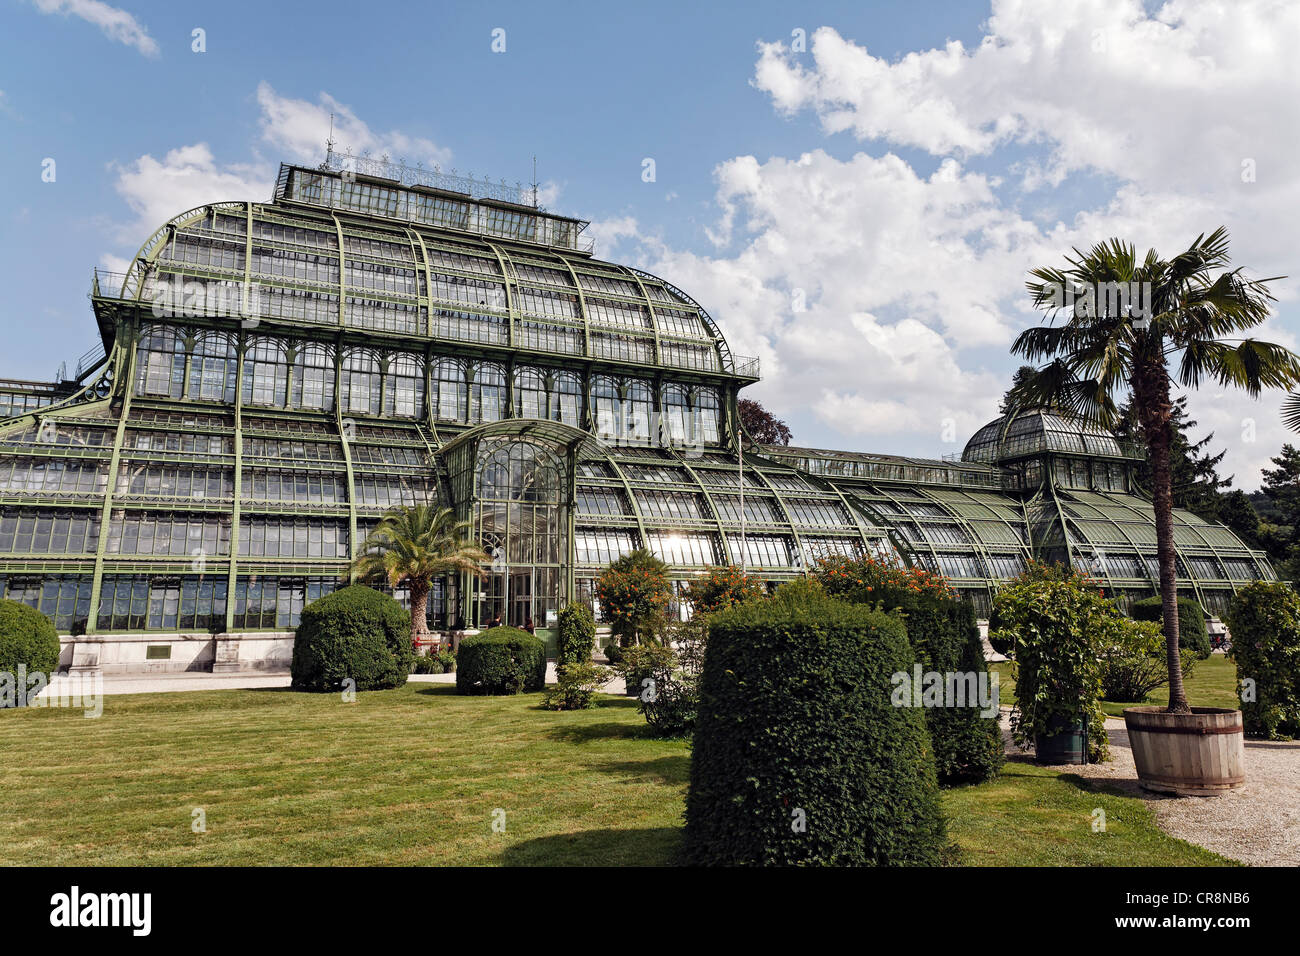 Palmenhaus greenhouse, historic iron structure, Schloss Schoenbrunn palace, Hietzing district, Vienna, Austria, Europe Stock Photo